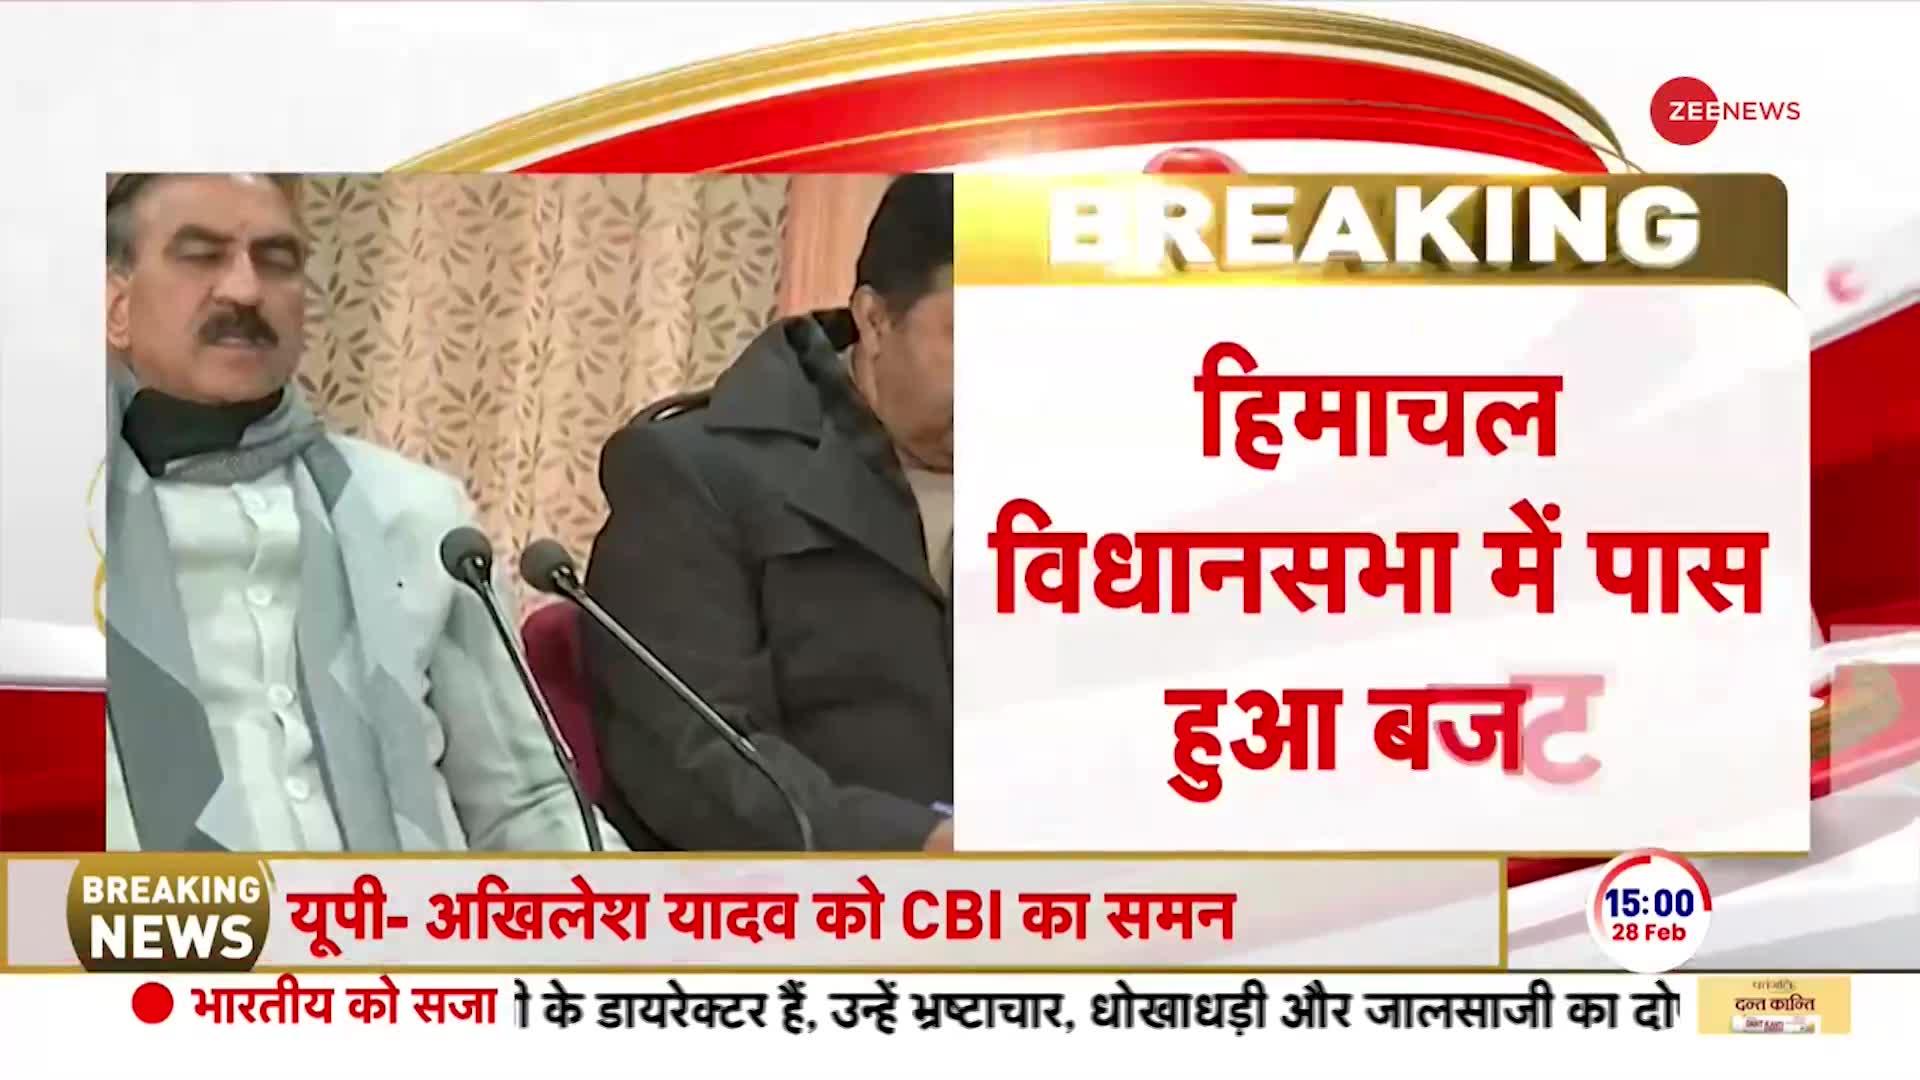 Breaking News: हिमाचल विधानसभा में पास हुआ राज्य का बजट